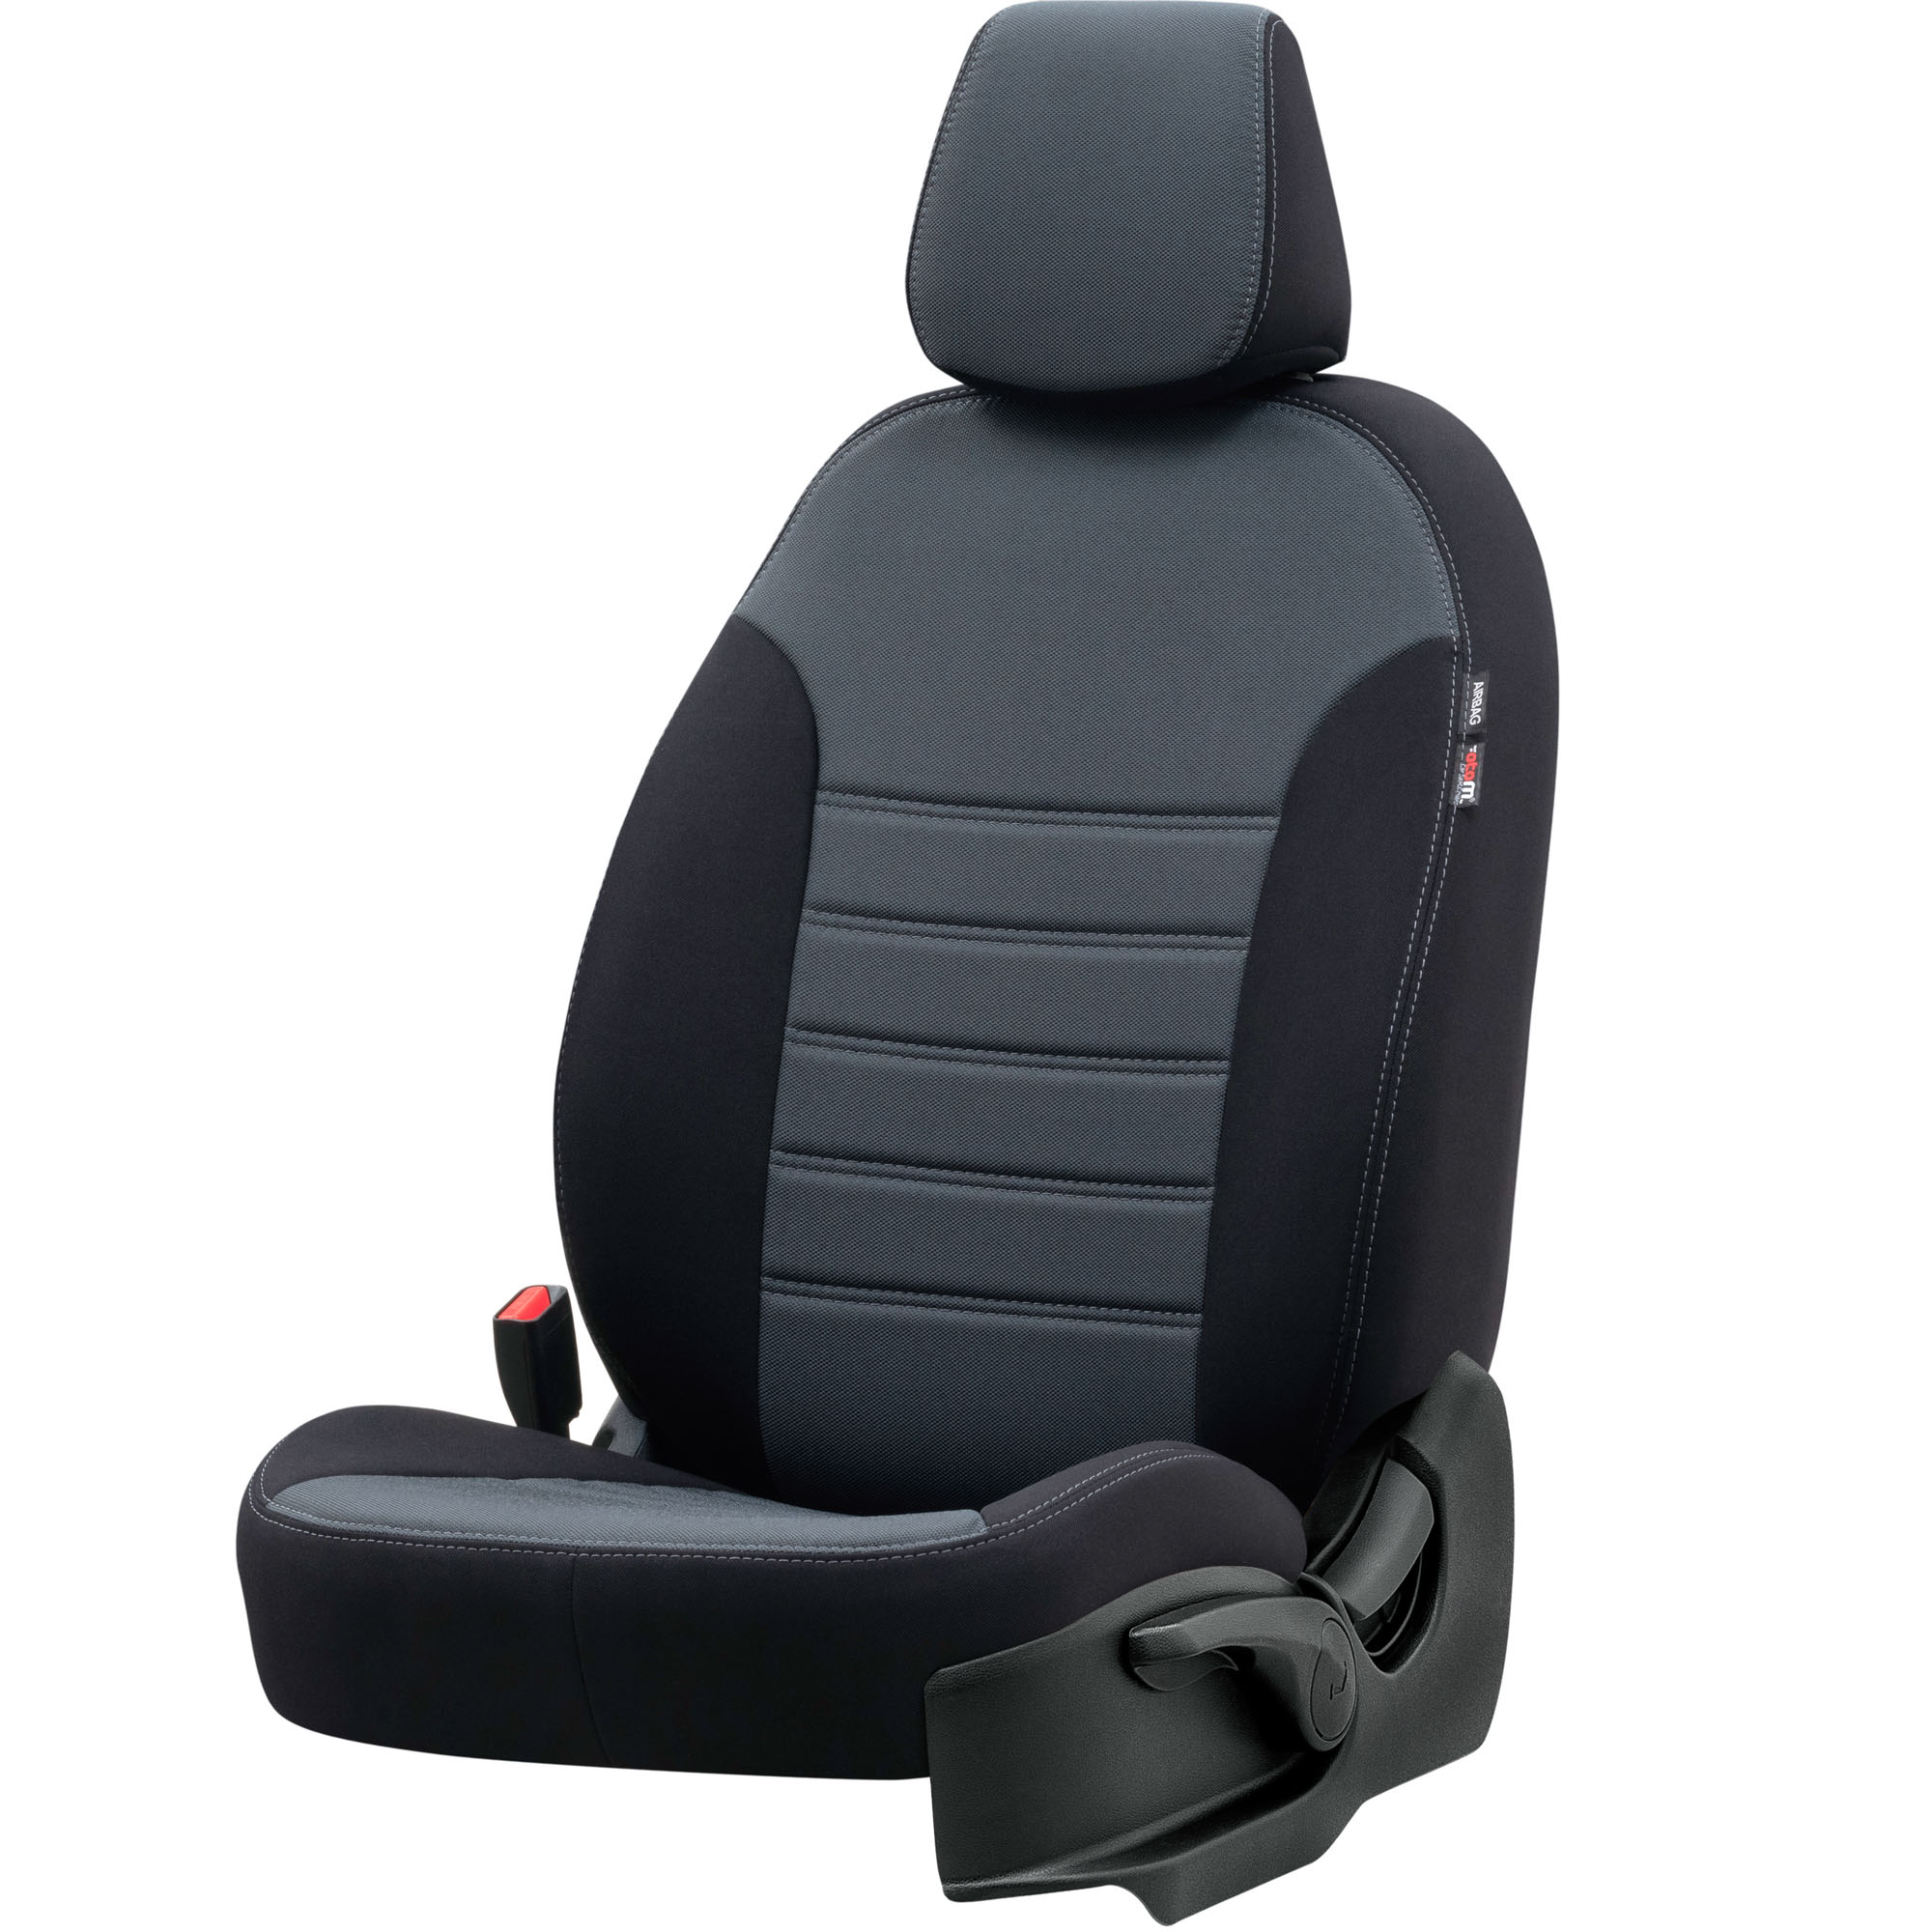 Otom Seat 20032008 Özel Üretim Koltuk Kılıfı Original Design